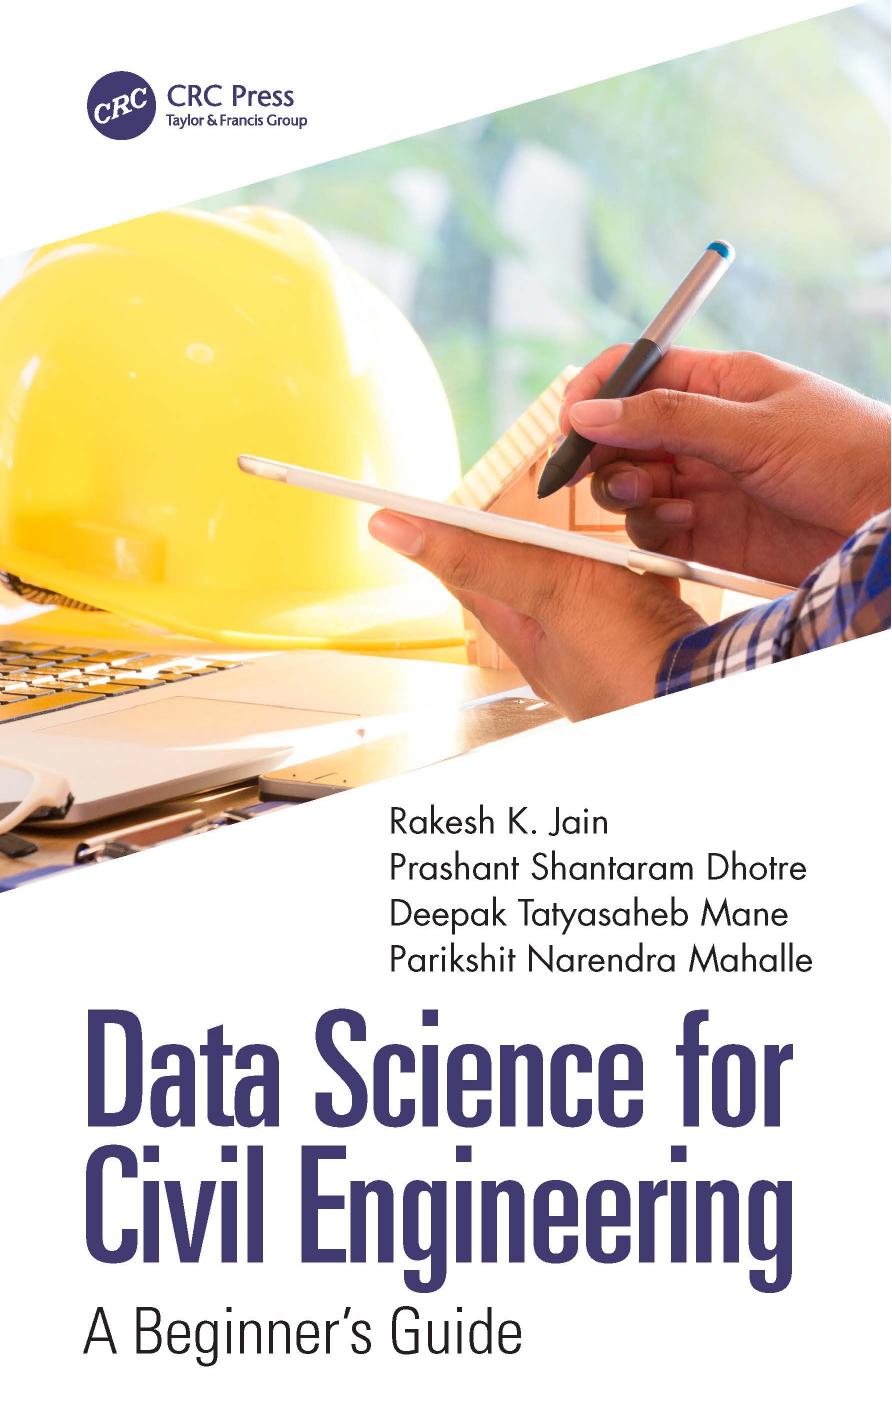 Data Science for Civil Engineering: A Beginner's Guide by Rakesh K. Jain; Prashant Shantaram Dhotre; Deepak Tatyasaheb Mane; Parikshit Narendra Mahalle